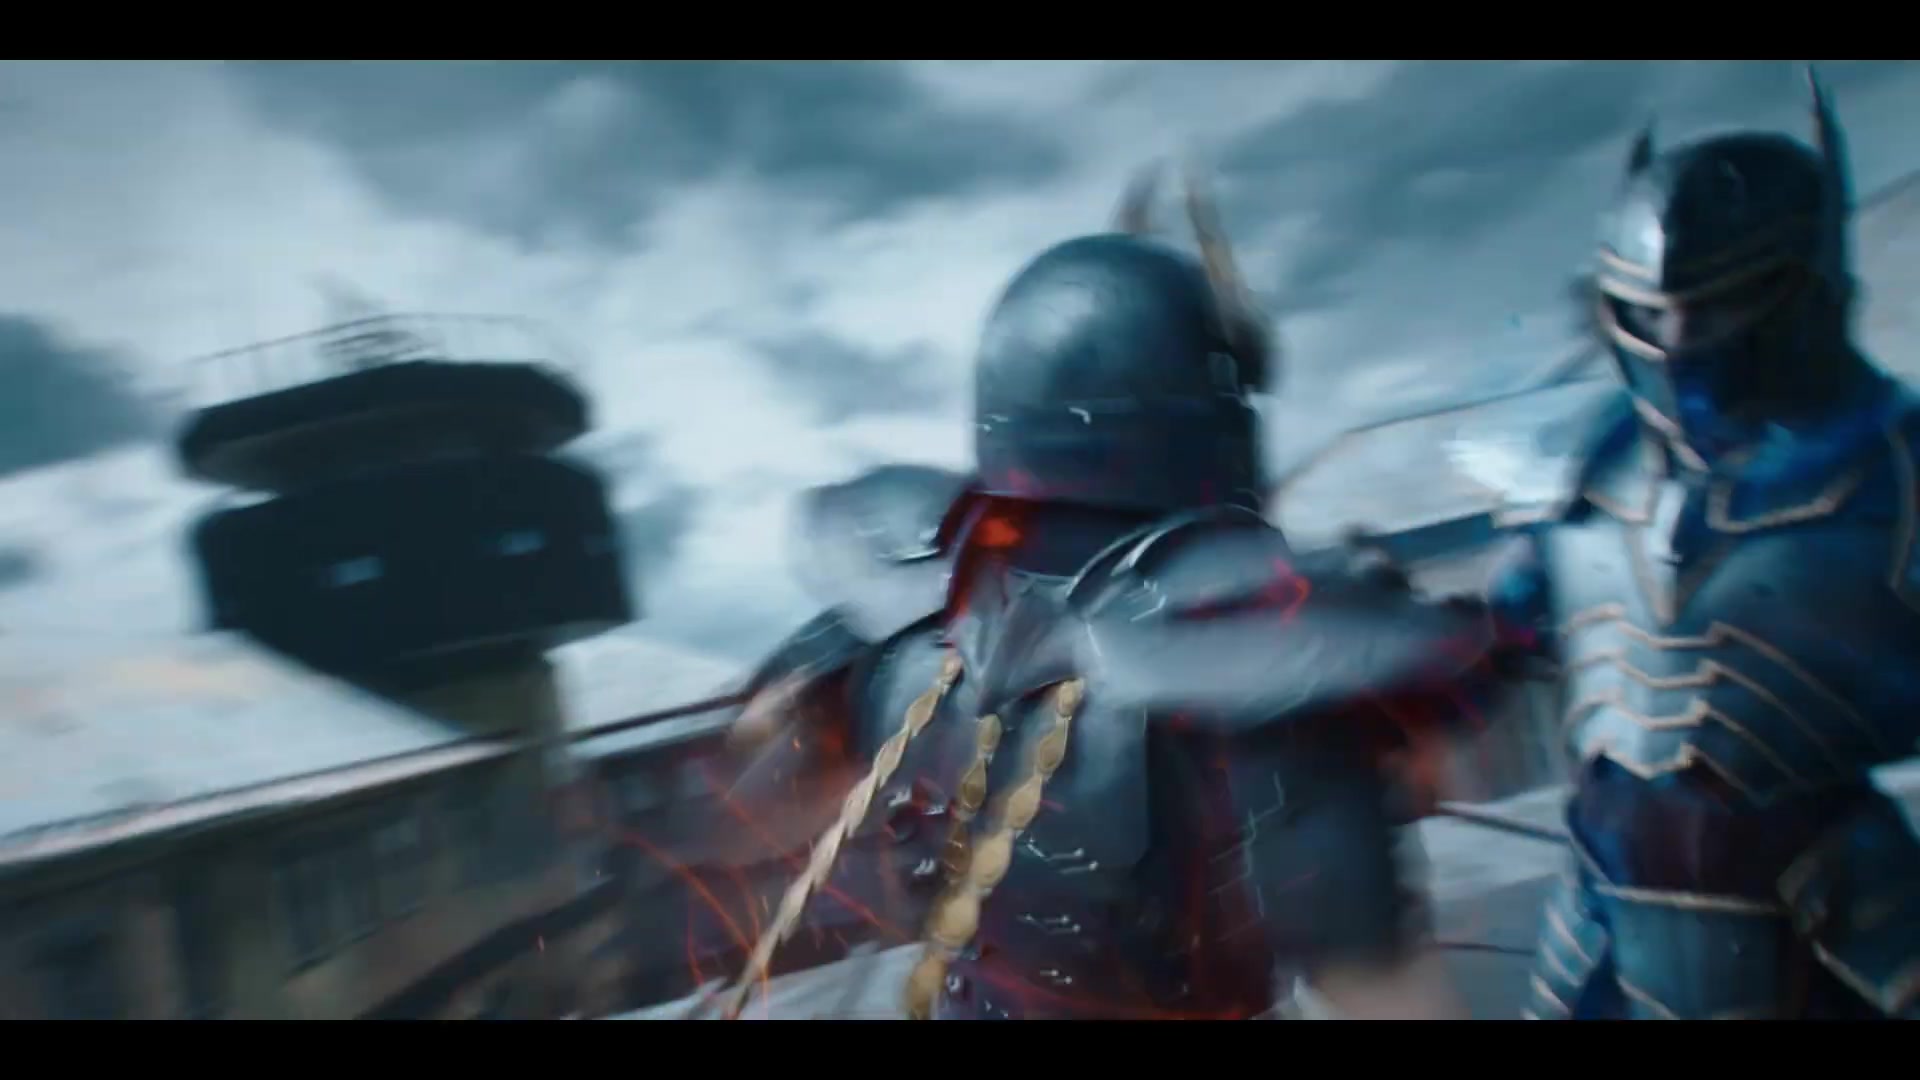 Cavaleiros do Zodíaco: filme será lançado no Brasil; confira o trailer -  Olhar Digital